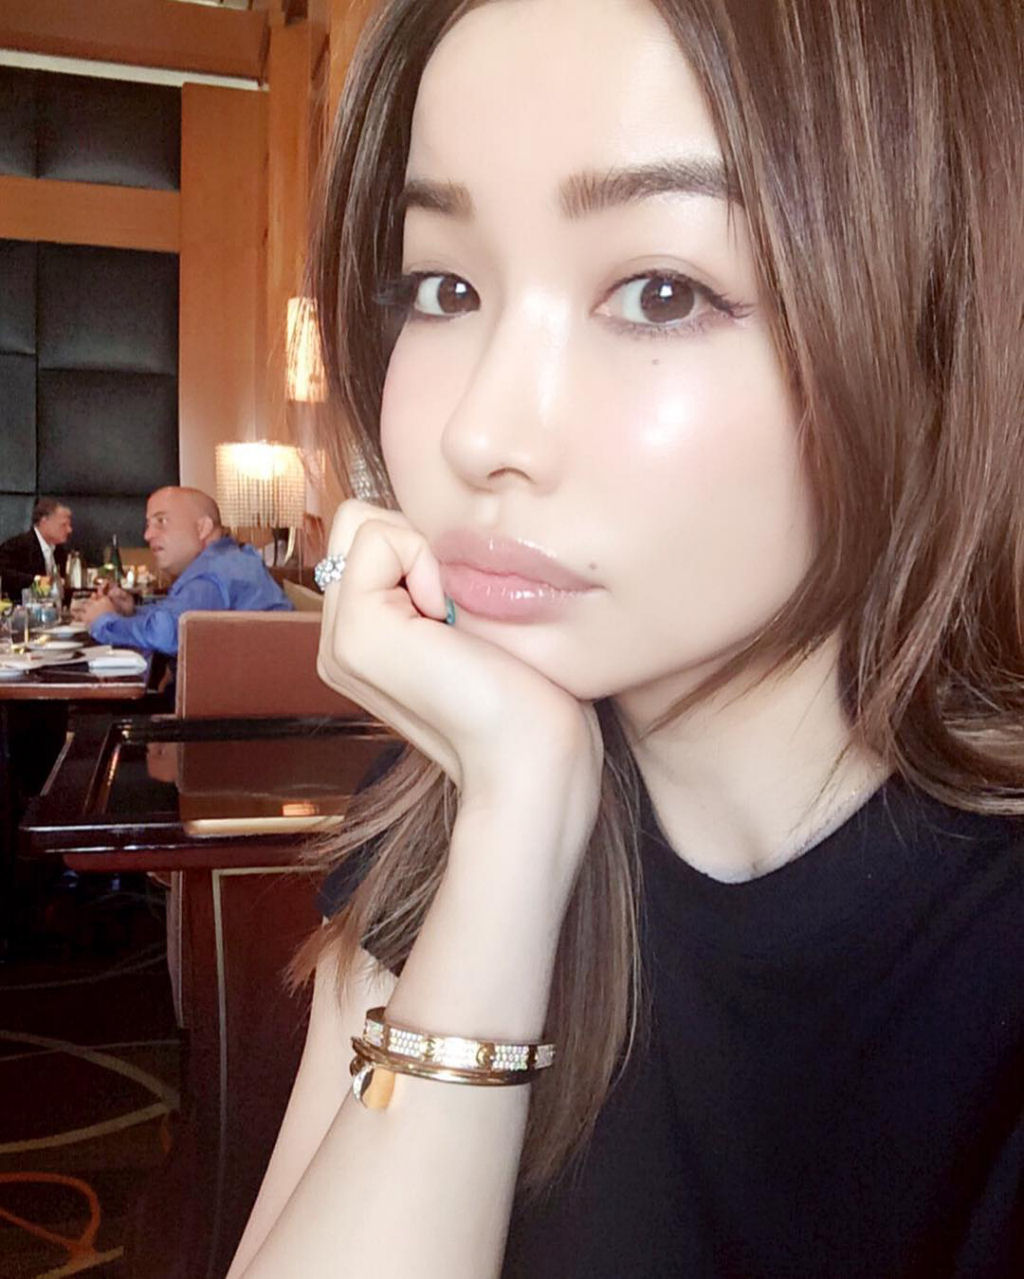 Riso Hirako: sabe por que esta modelo est fazendo tanto sucesso no Instagram? 01